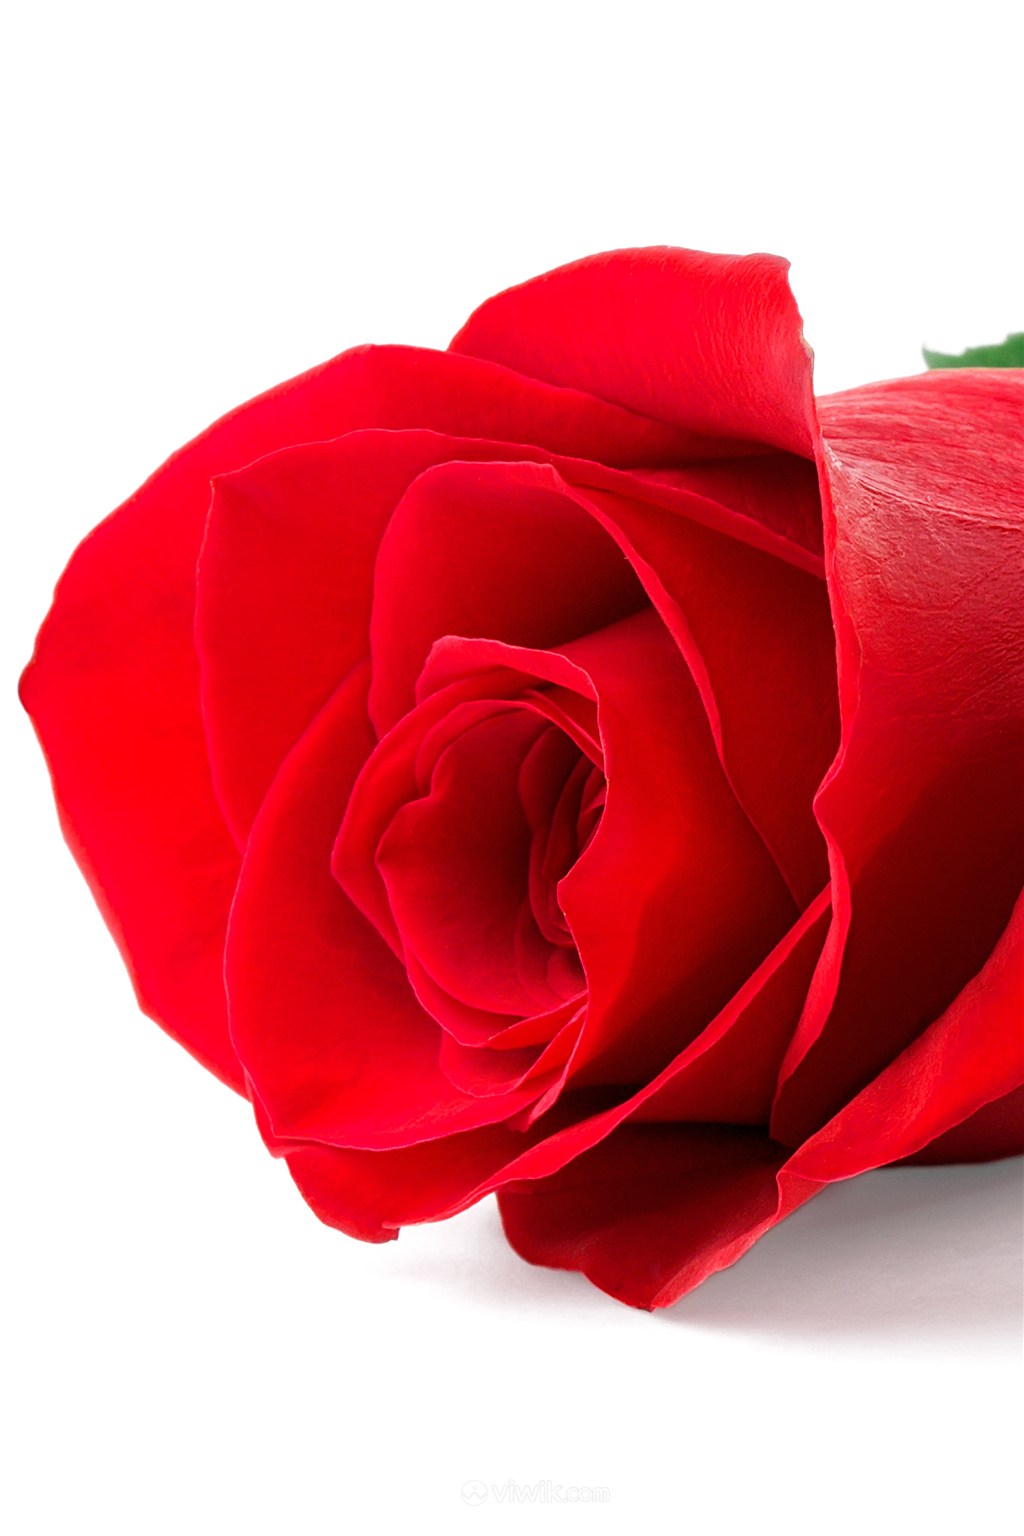 娇艳美丽红色玫瑰鲜花图片